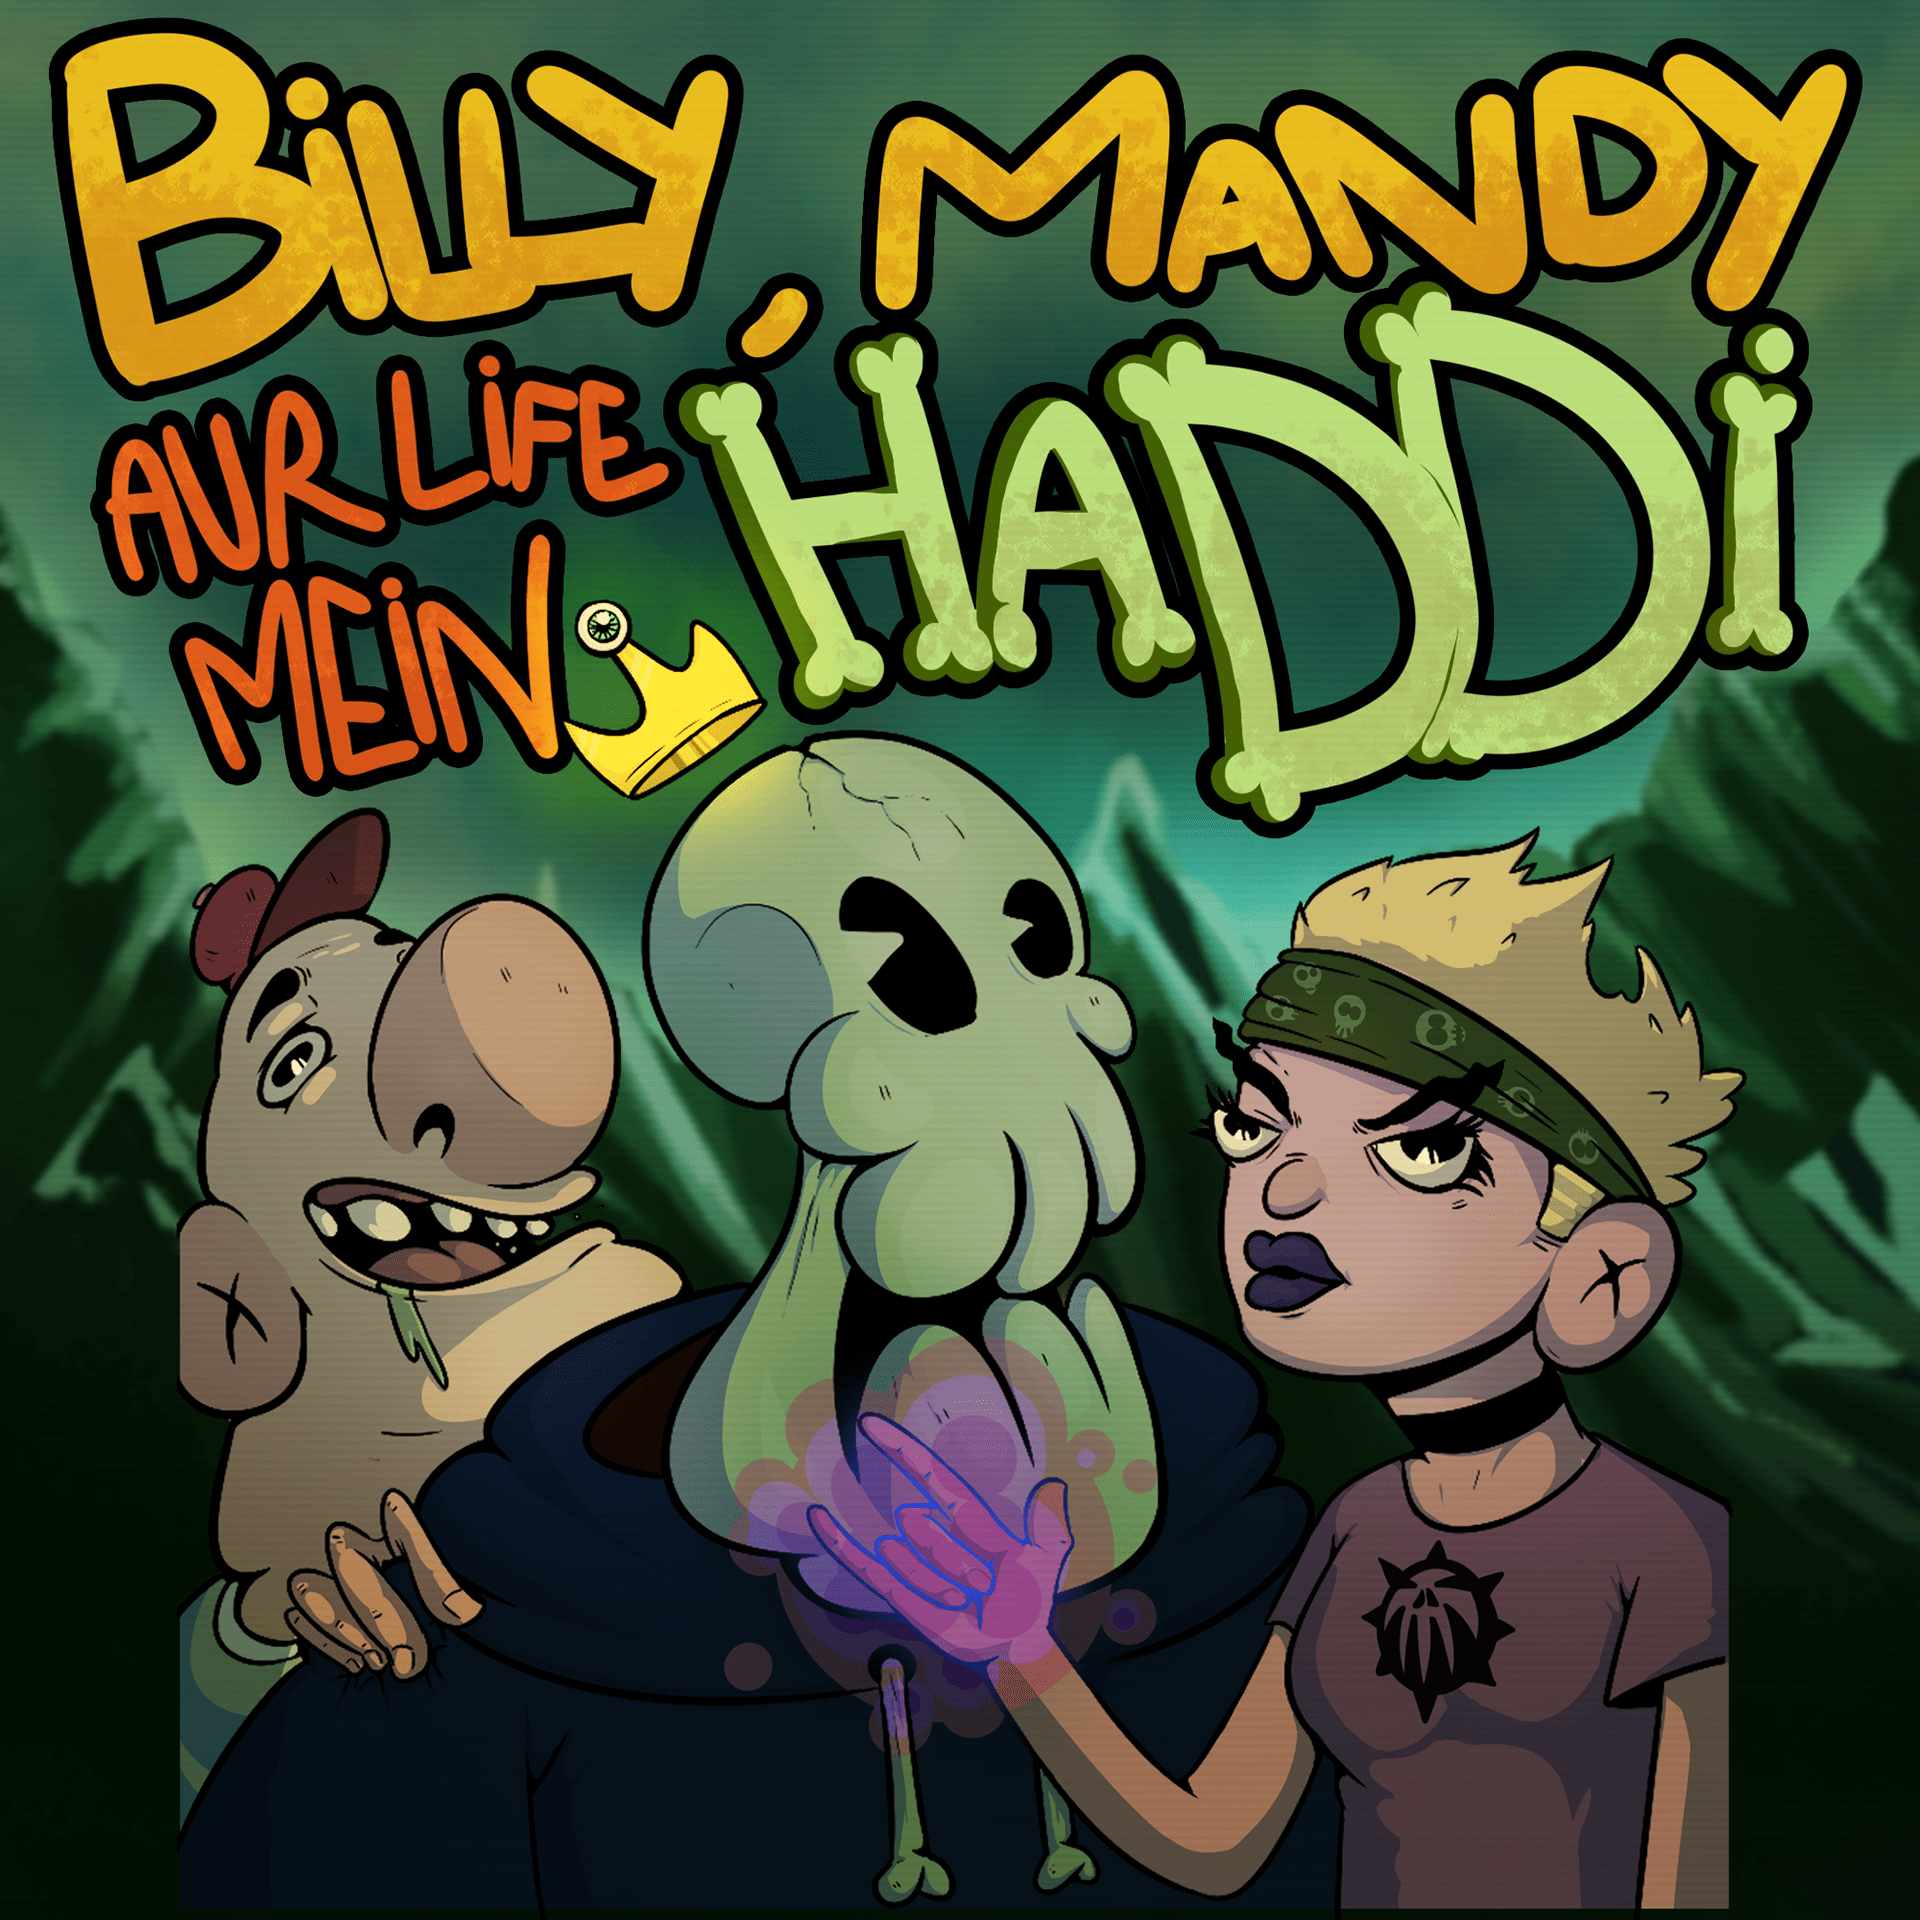 Billy Mandy aur Life Mein Haddi on Behance